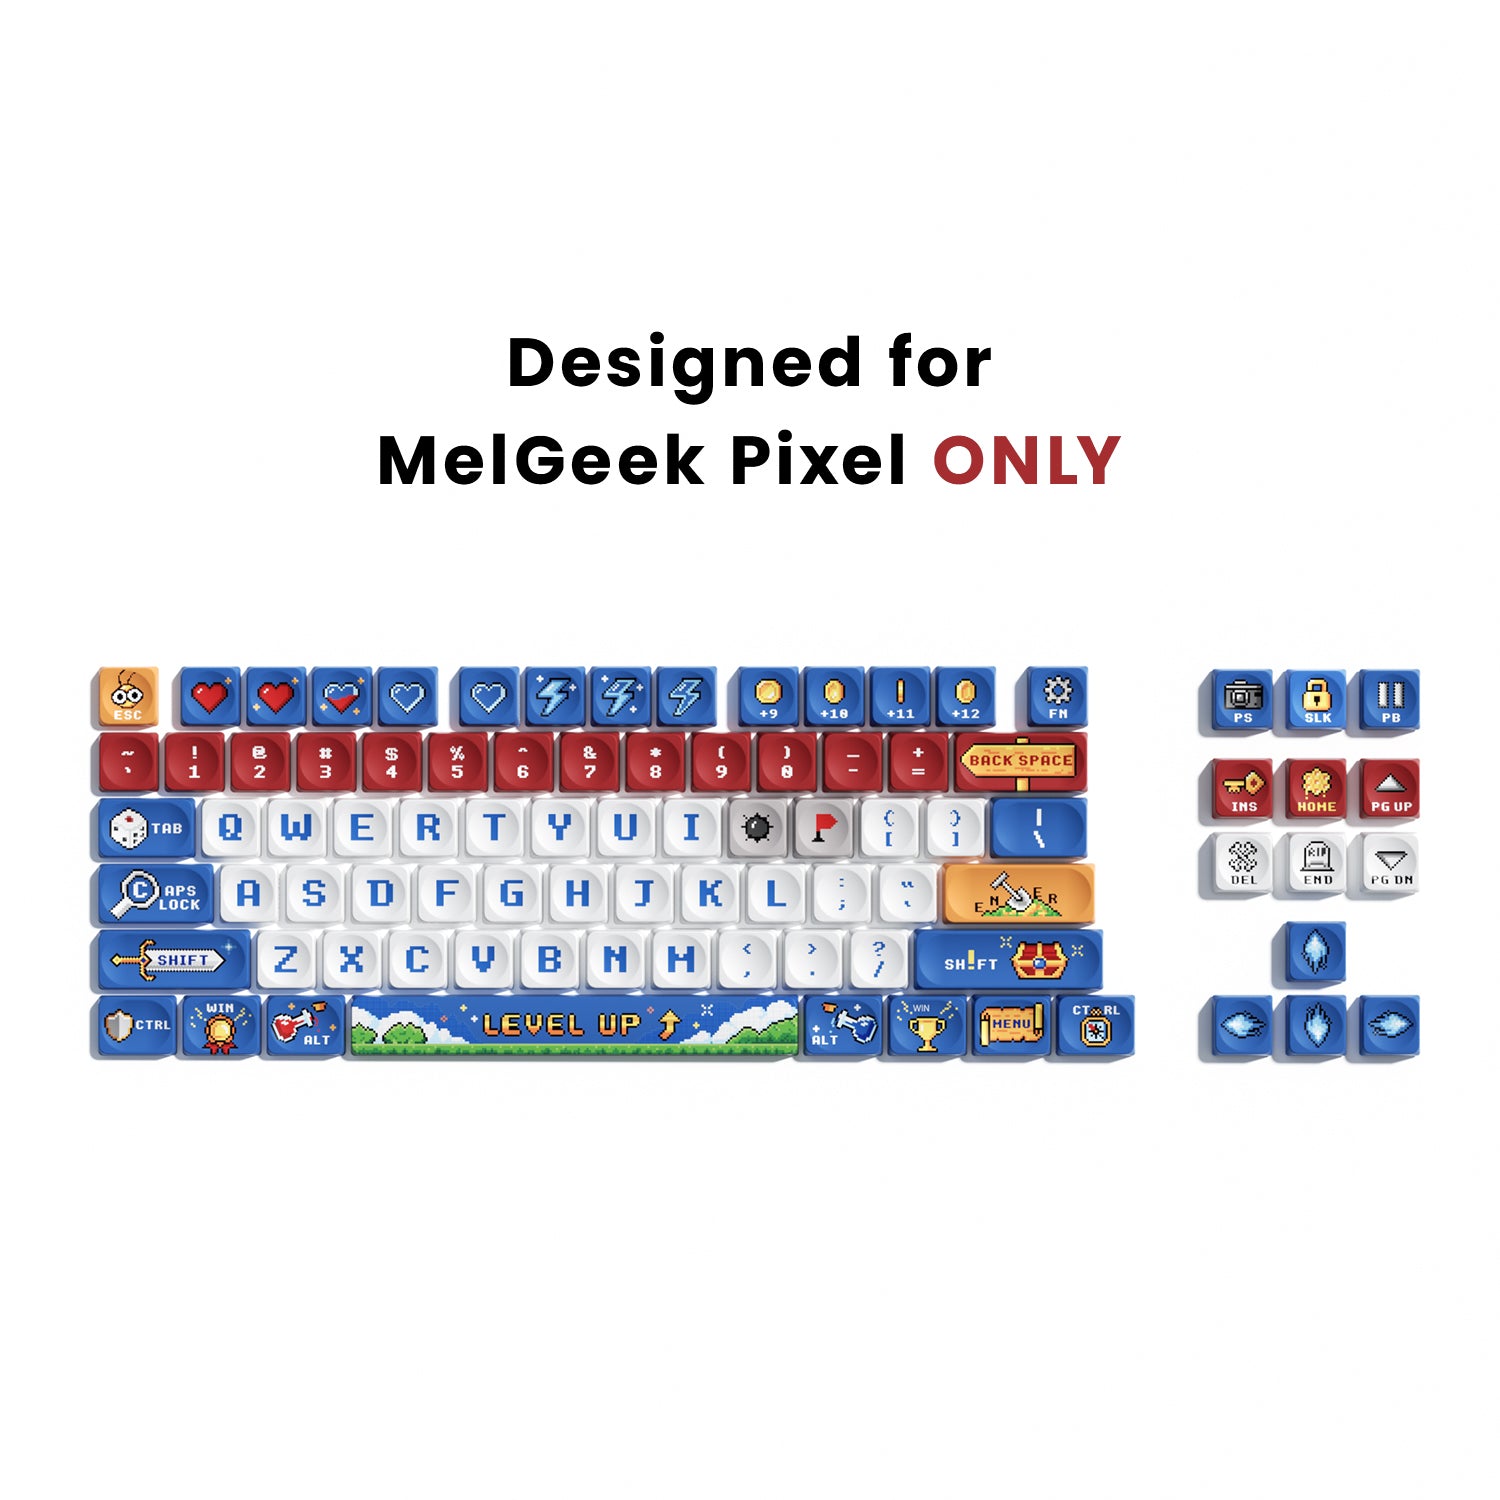 Pixel Keycap Set-16bit